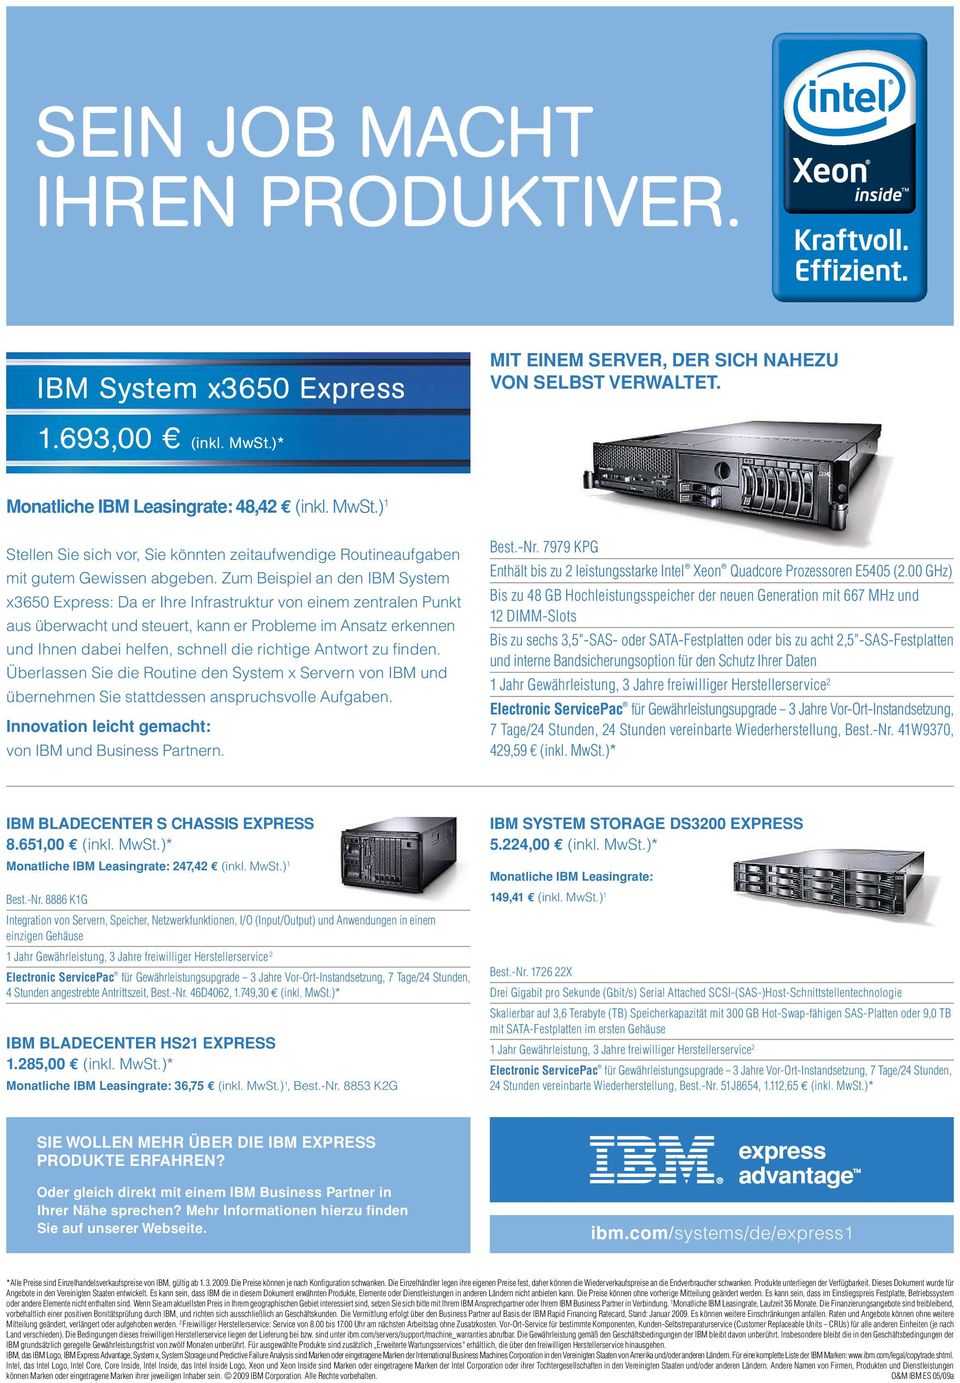 zum Beispiel an den IBM System x3650 Express: Da er Ihre Infrastruktur von einem zentralen Punkt aus überwacht und steuert, kann er Probleme im Ansatz erkennen und Ihnen dabei helfen, schnell die